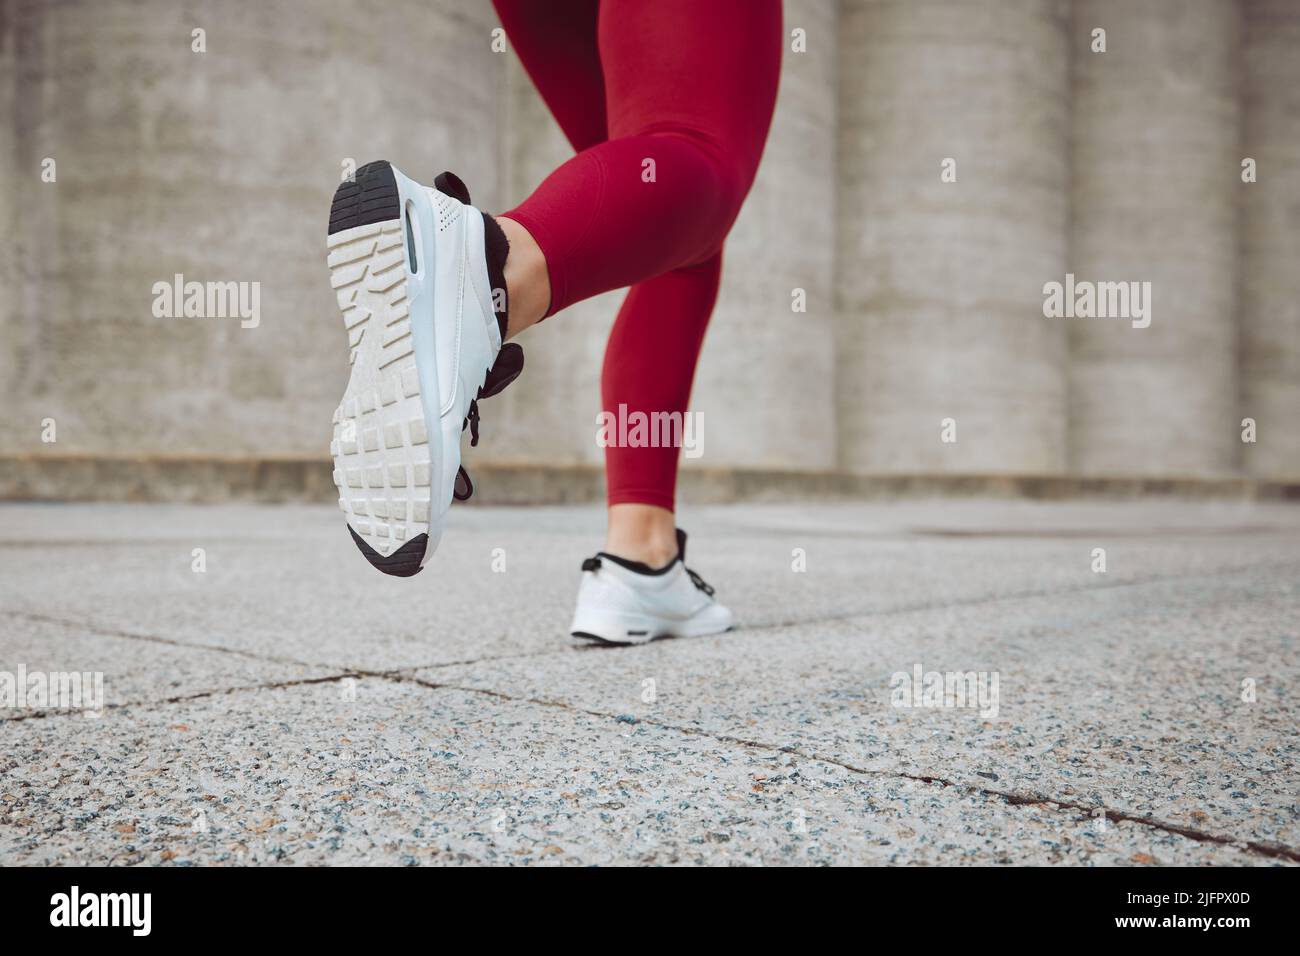 Siempre en movimiento. Imagen de la visión trasera de una atleta irreconocible que corre al aire libre. Foto de stock